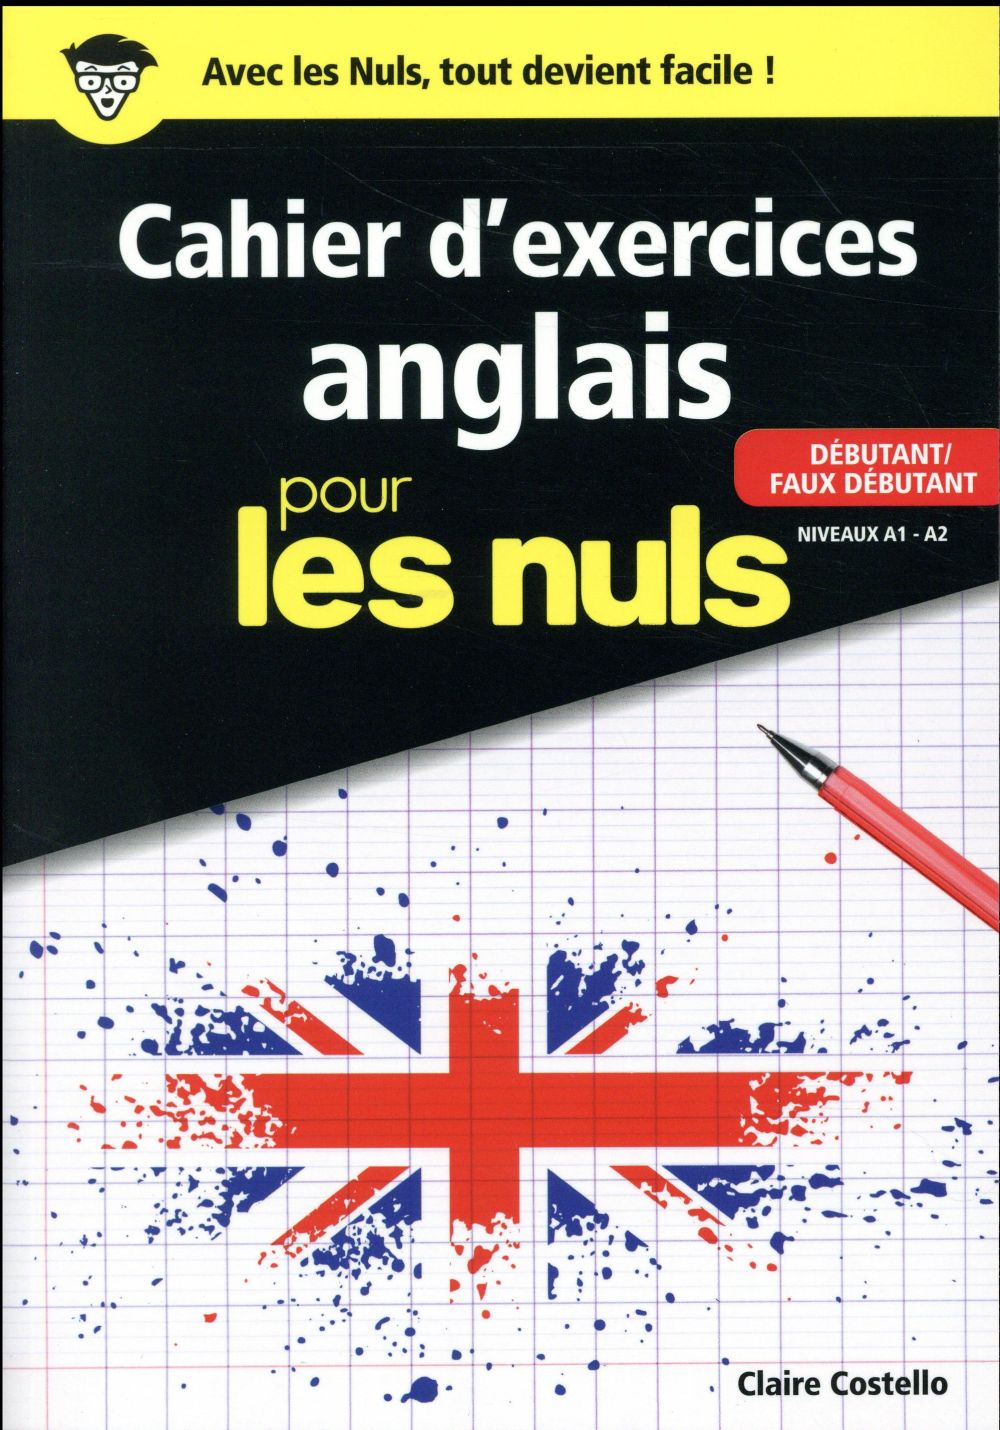 LE CAHIER D'EXERCICES ANGLAIS POUR LES NULS - DEBUTANT/FAUX DEBUTANT NIVEAUX A1 - A2